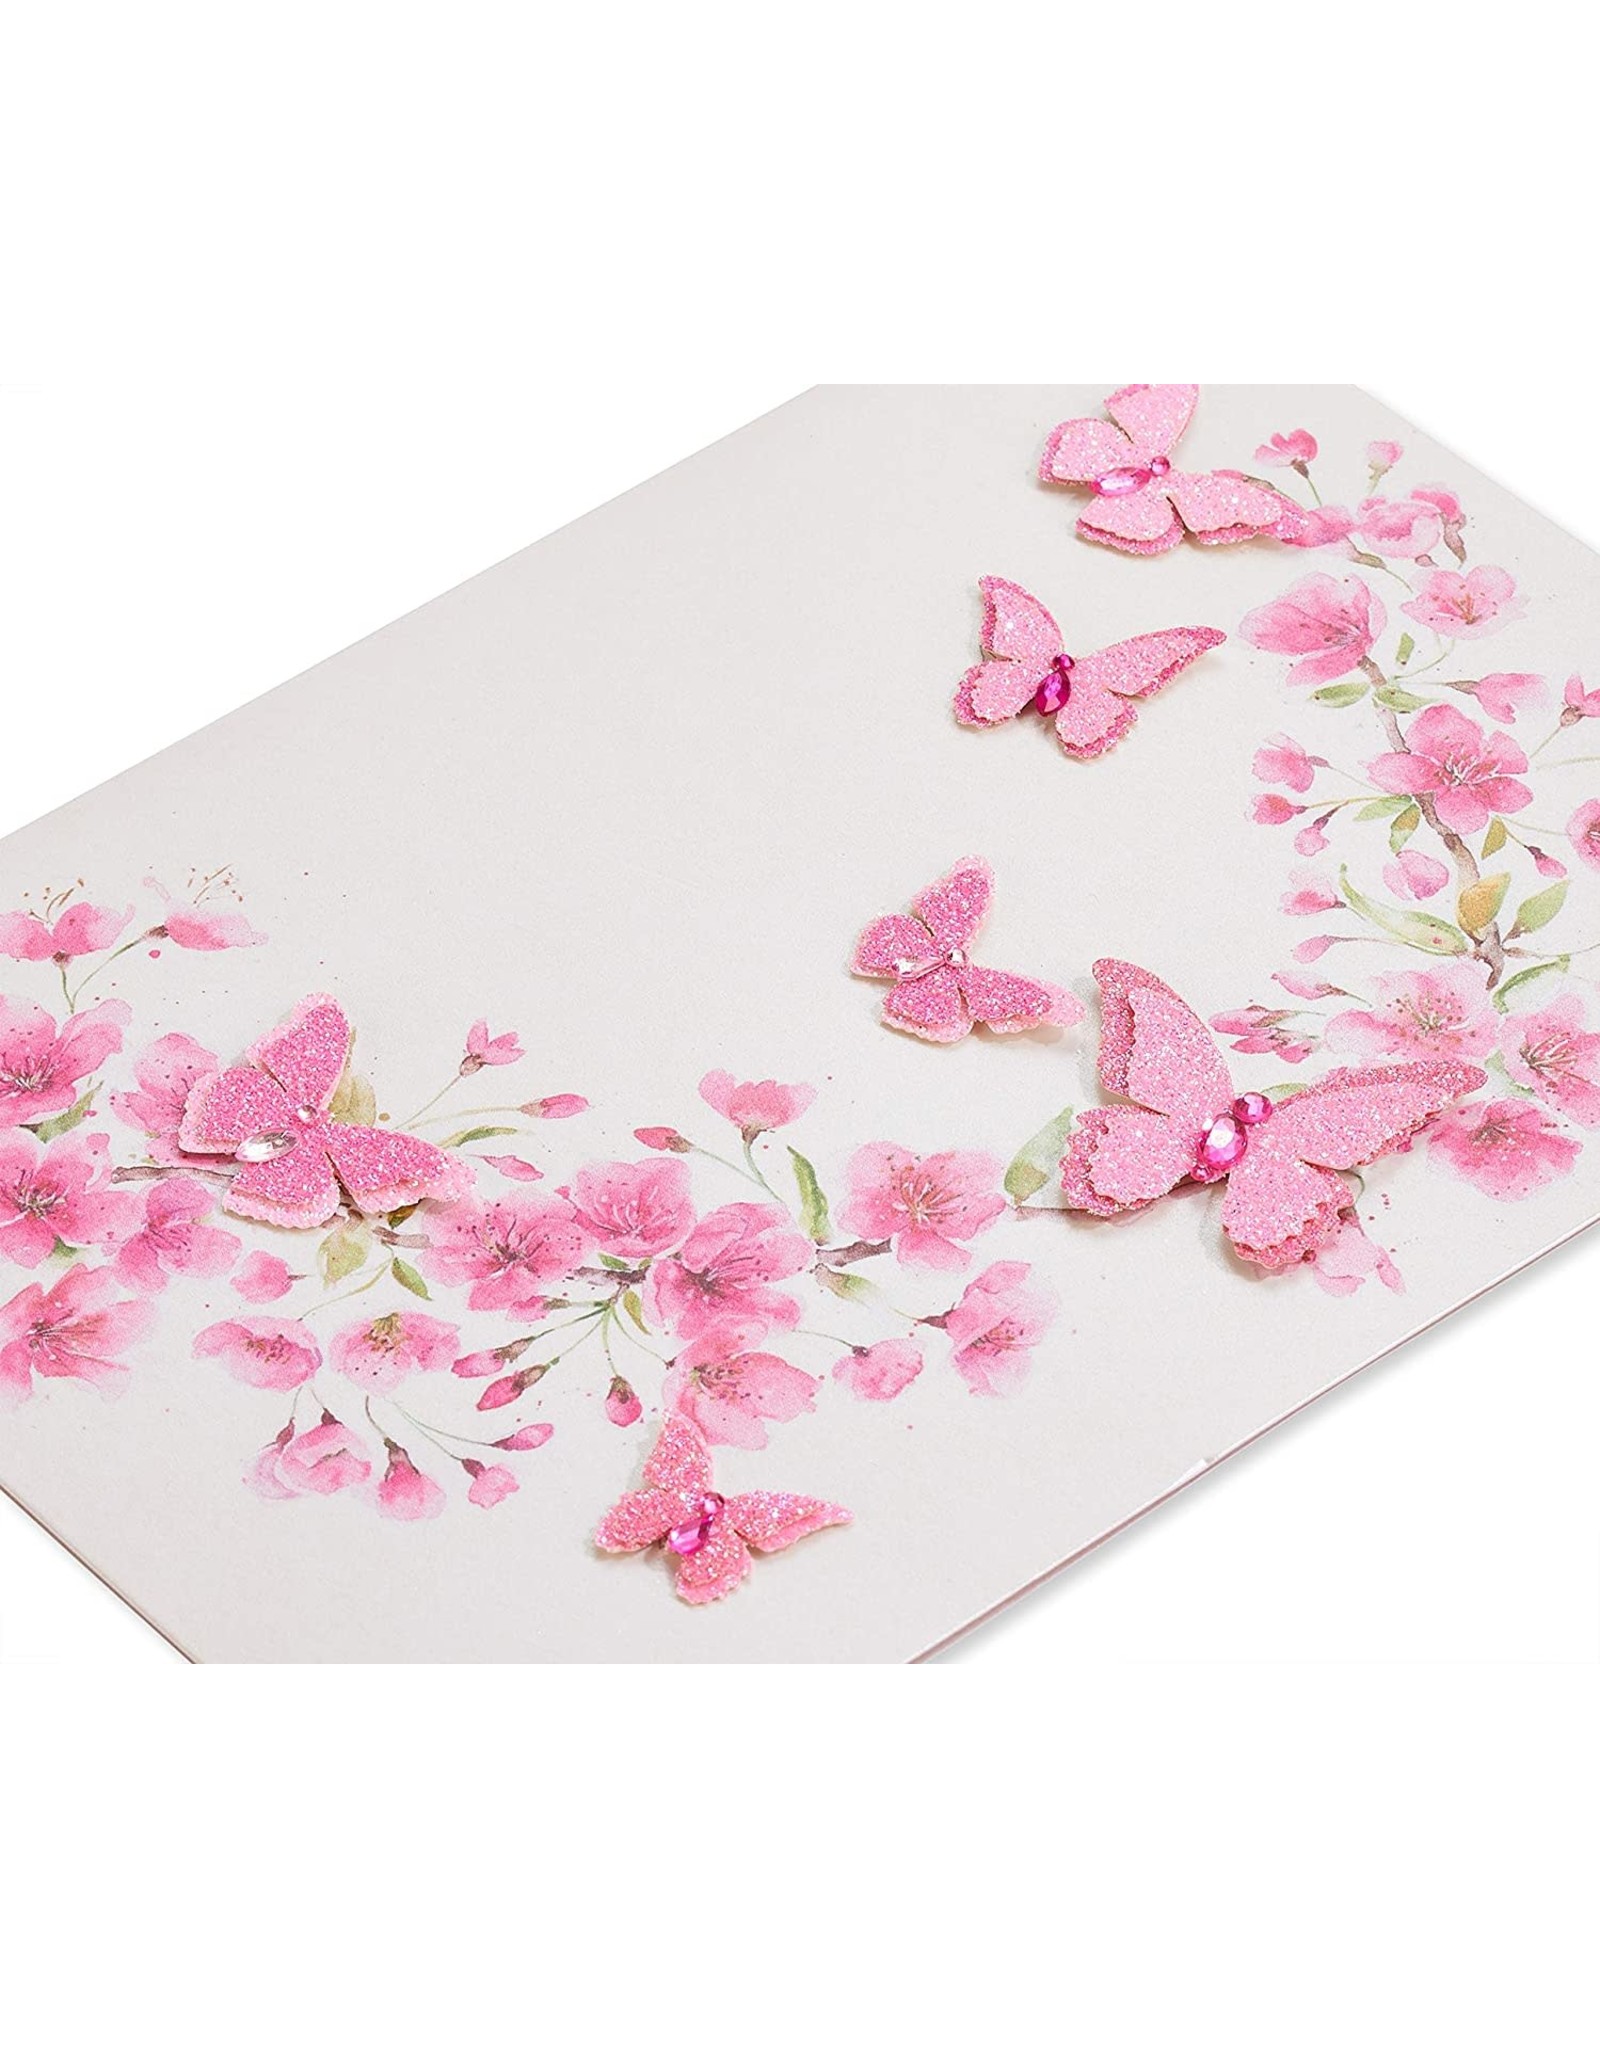 PAPYRUS® Blank Card Pink Glitter Butterflies Floral Design